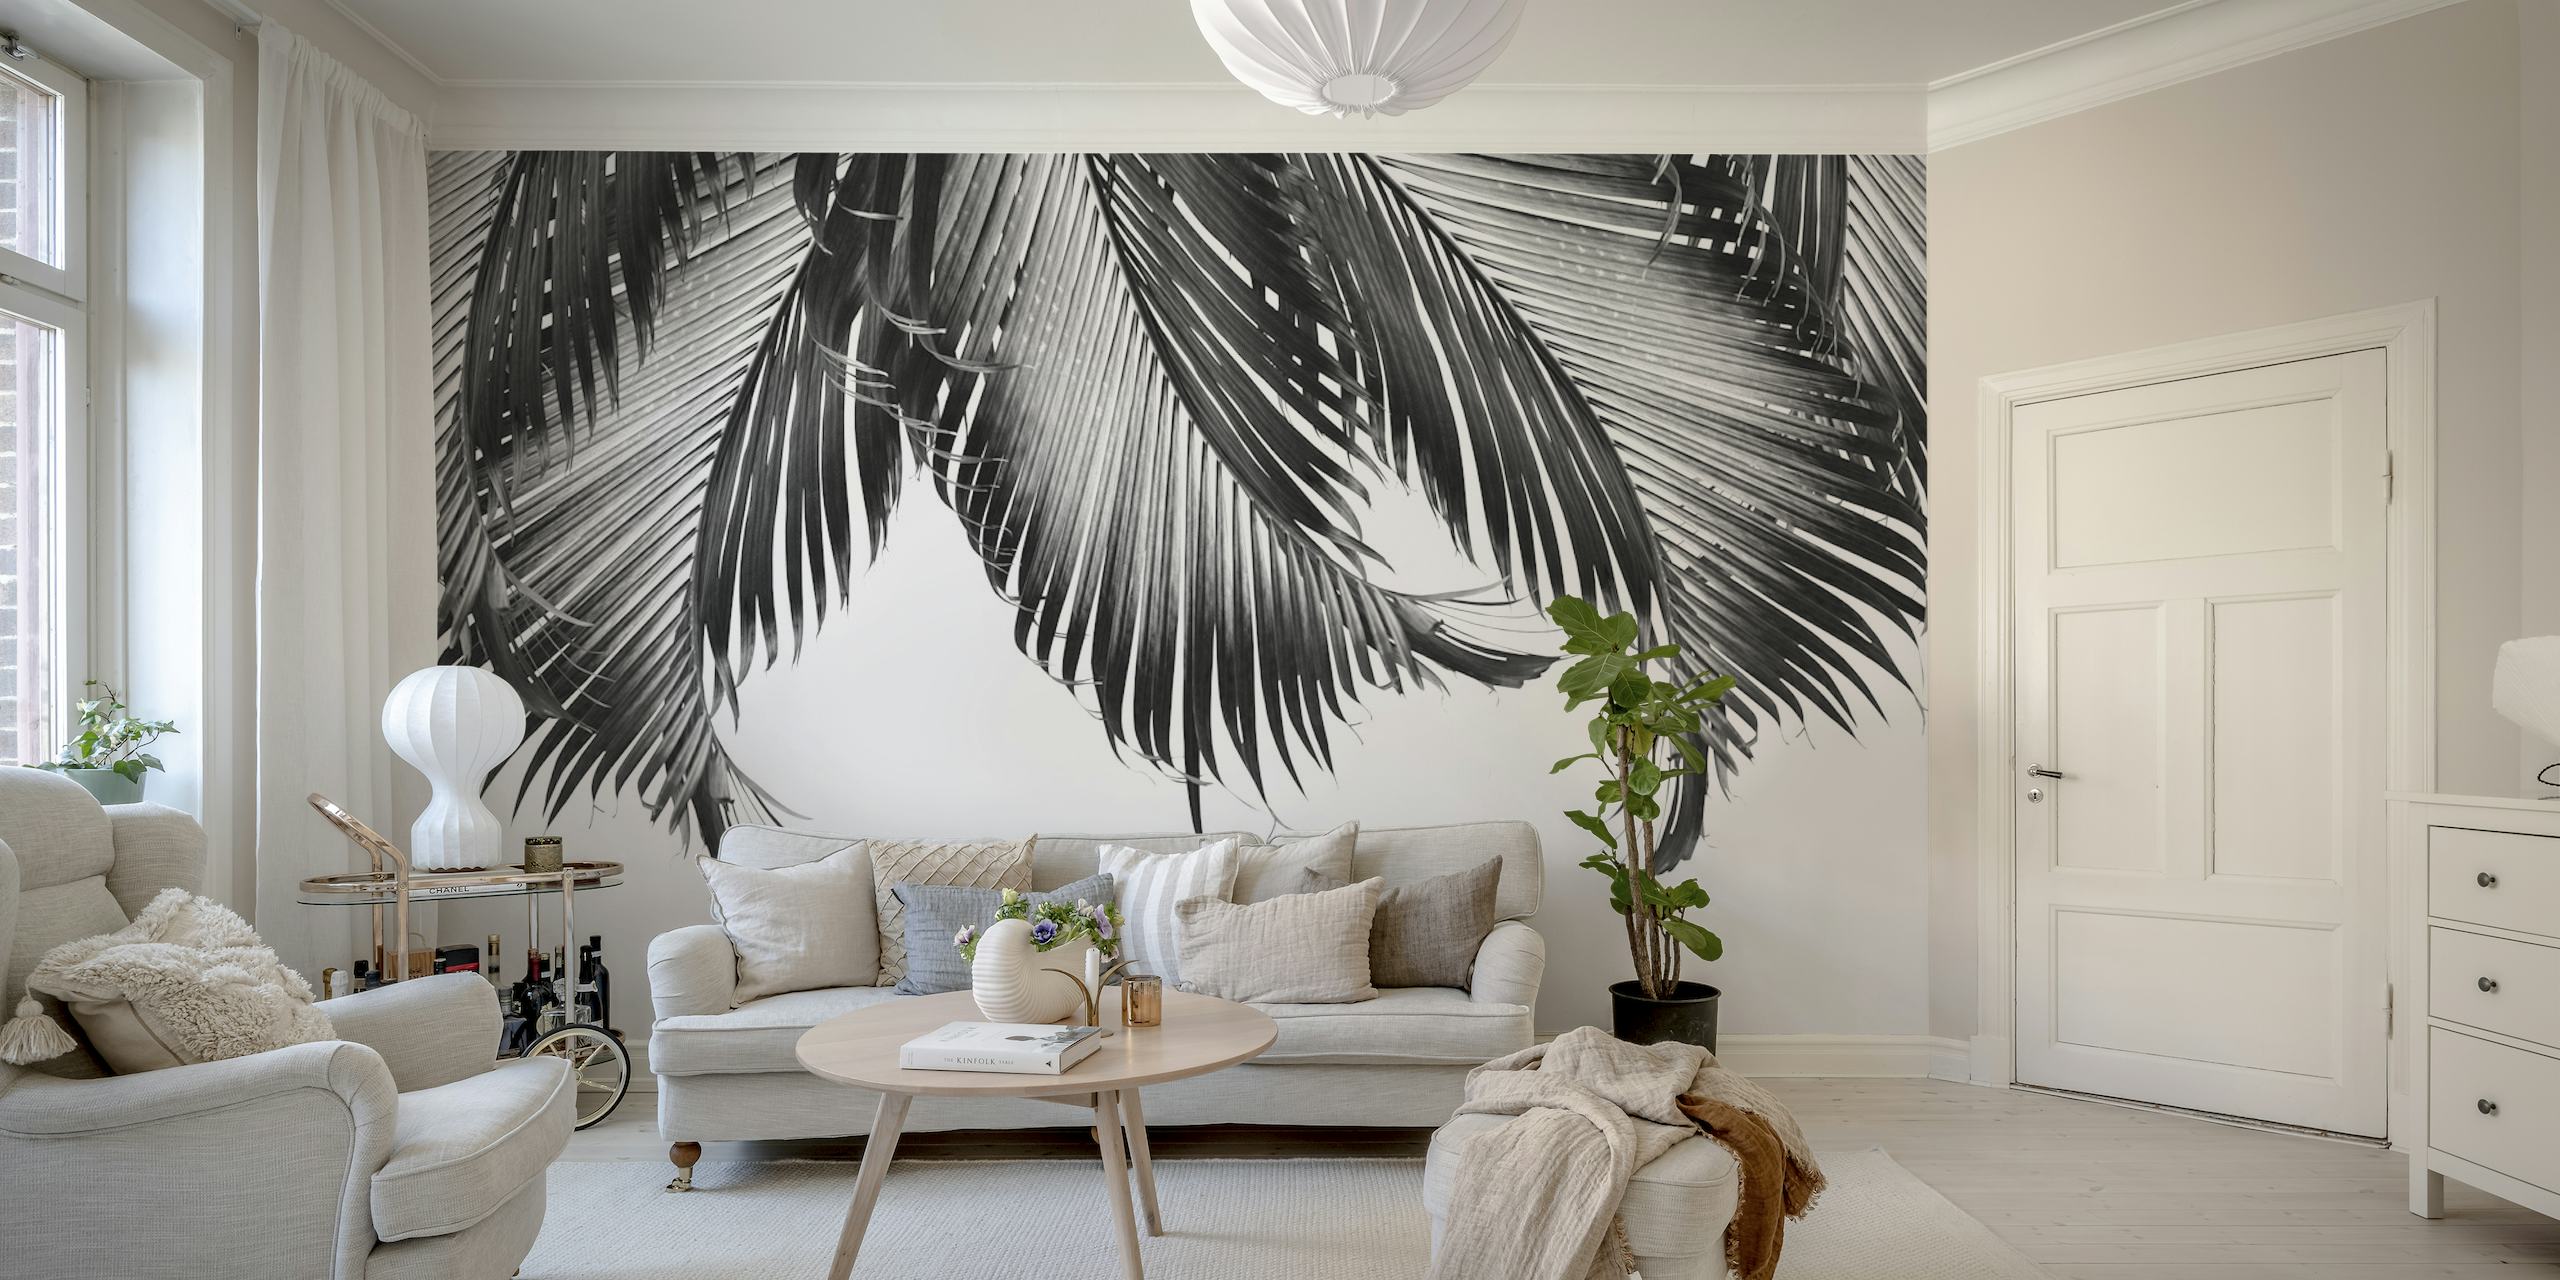 Fotomural con diseño de hoja de palma en blanco y negro para una decoración interior moderna